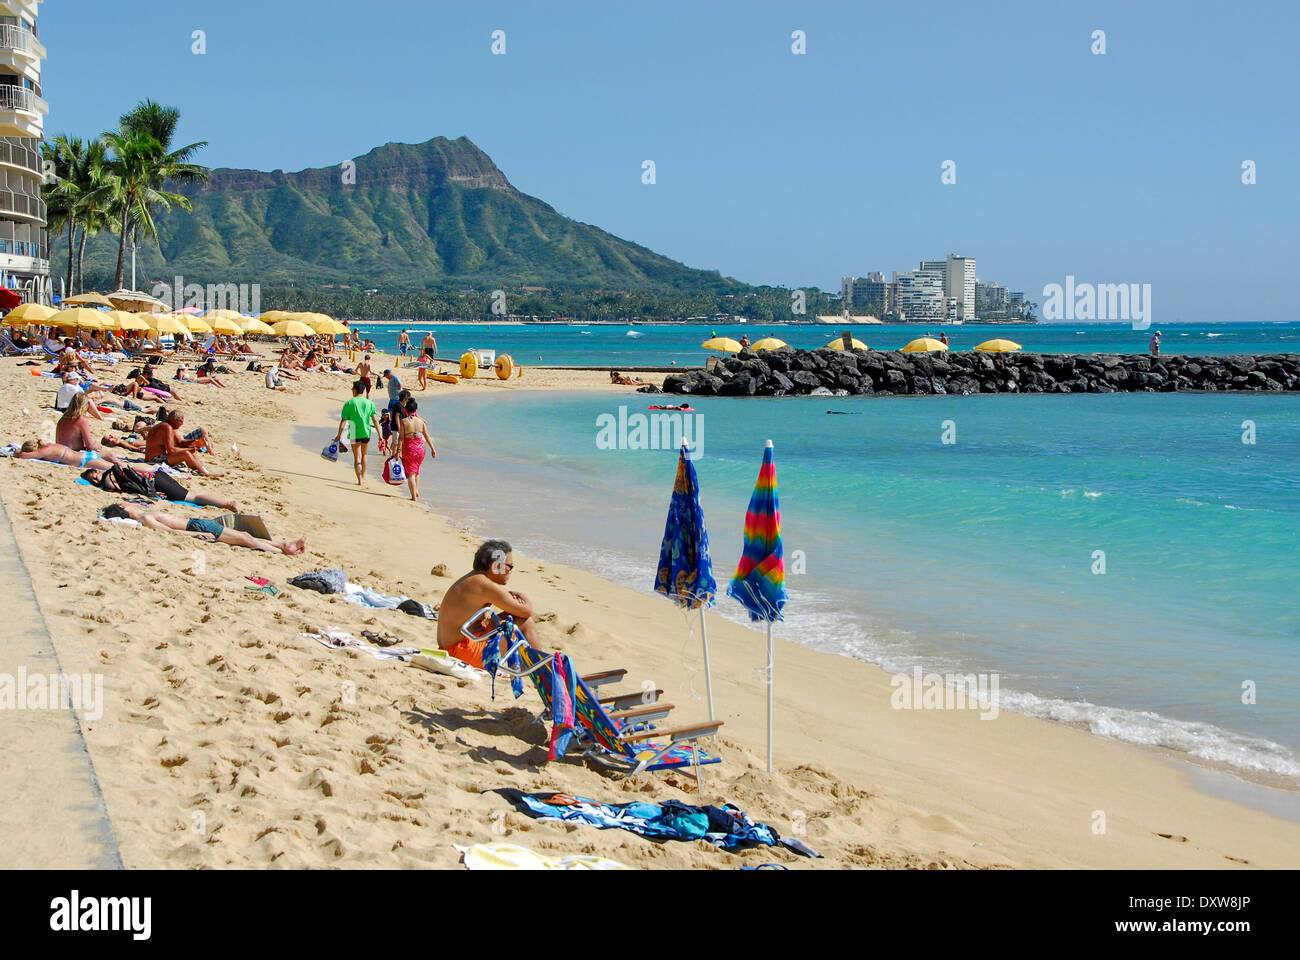 La plage de Waikiki à Honolulu, l'île d'Oahu, dans l'état de New York Banque D'Images